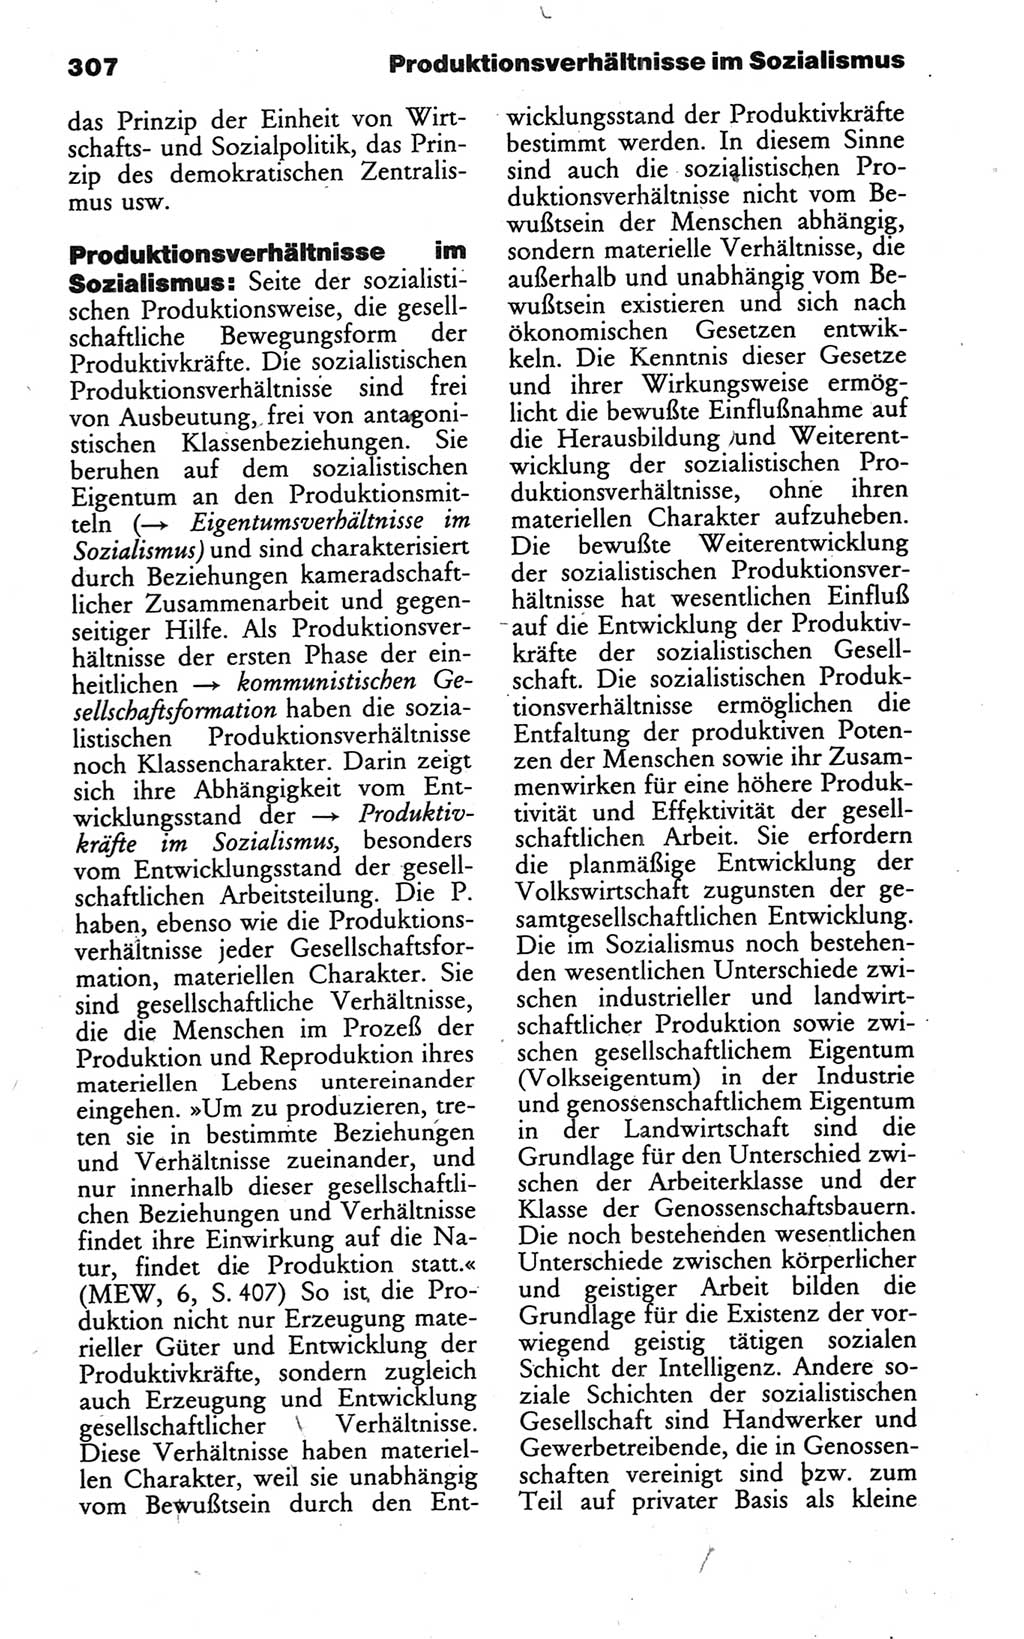 Wörterbuch des wissenschaftlichen Kommunismus [Deutsche Demokratische Republik (DDR)] 1986, Seite 307 (Wb. wiss. Komm. DDR 1986, S. 307)